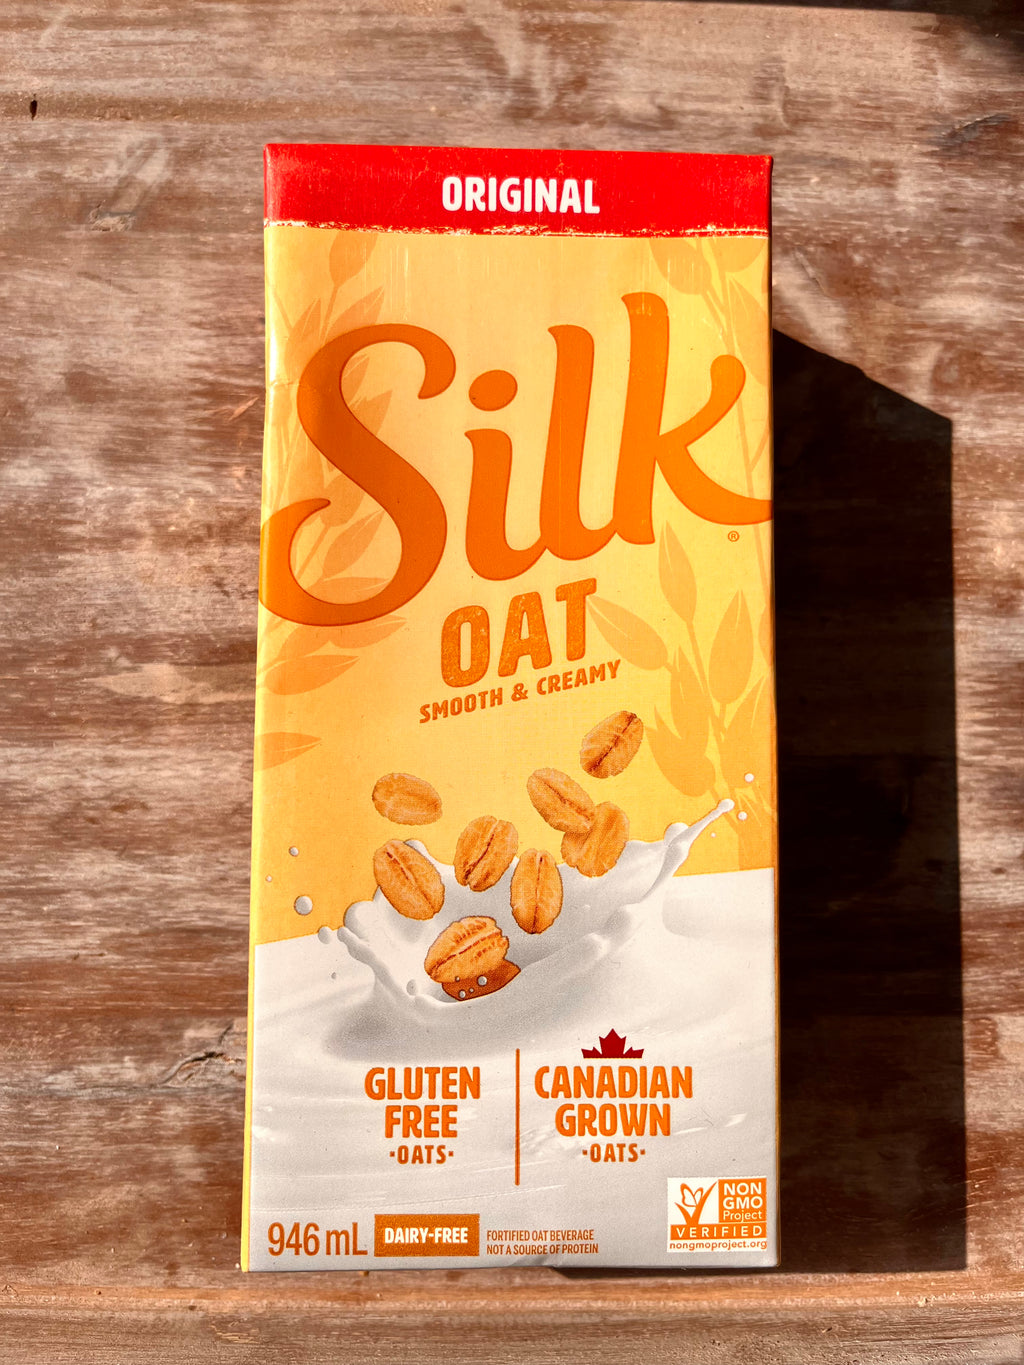 Silk Boisson à l'avoine originale, nature, sans produits laitiers